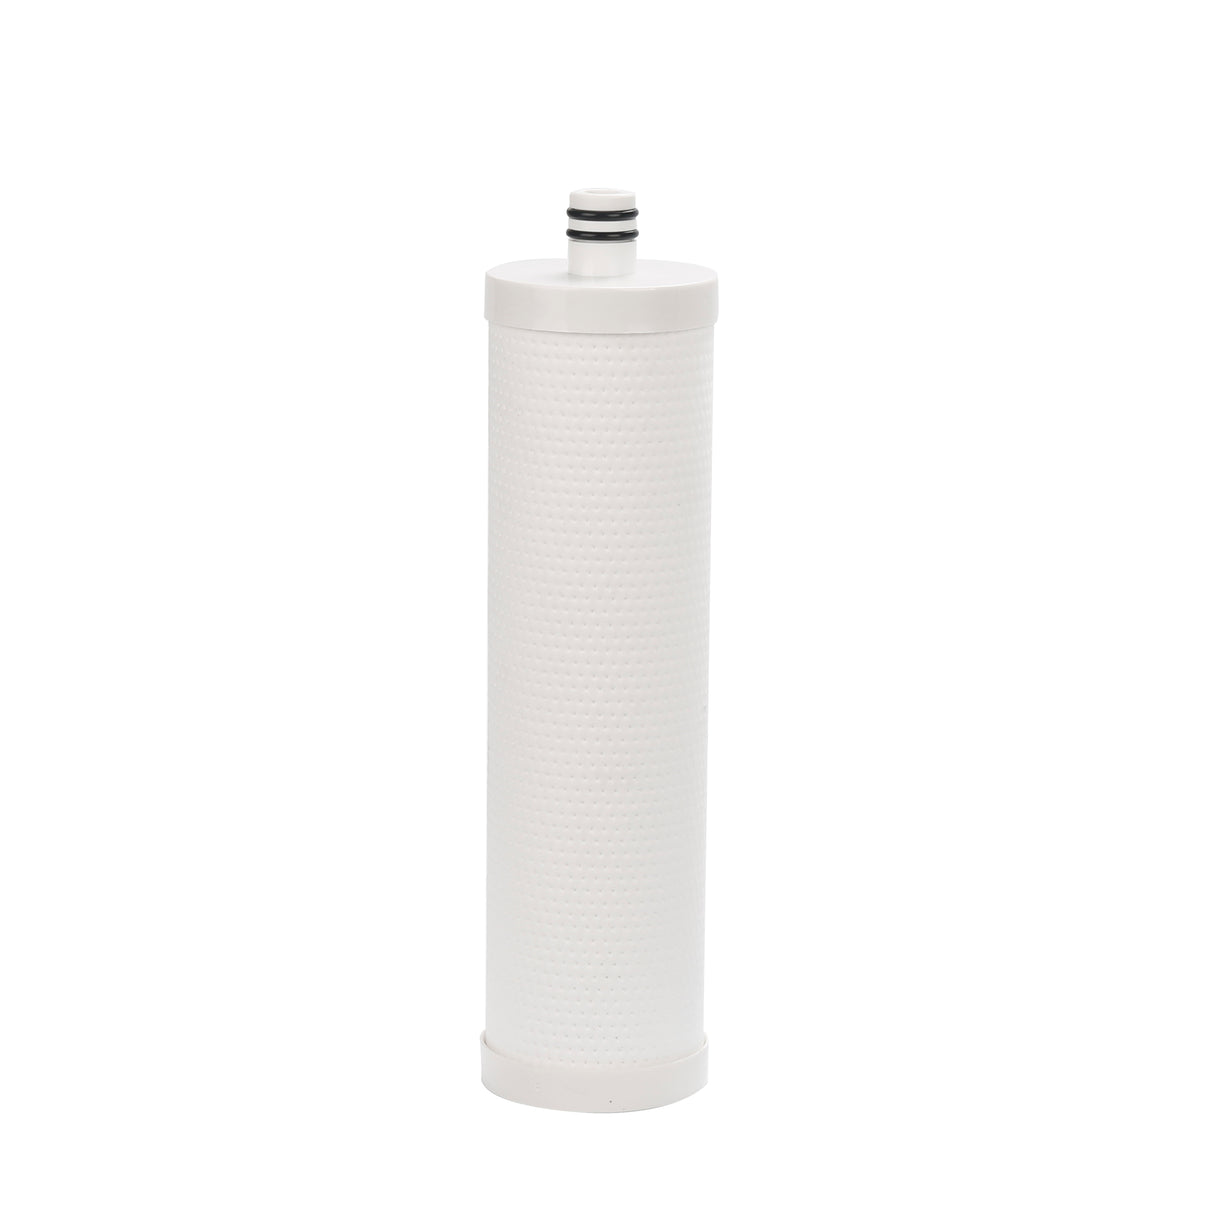 Cartucho de filtro de repuesto Frizzlife para filtro de agua MP99, MK99, MV99 y MS99 (FZ-2) 